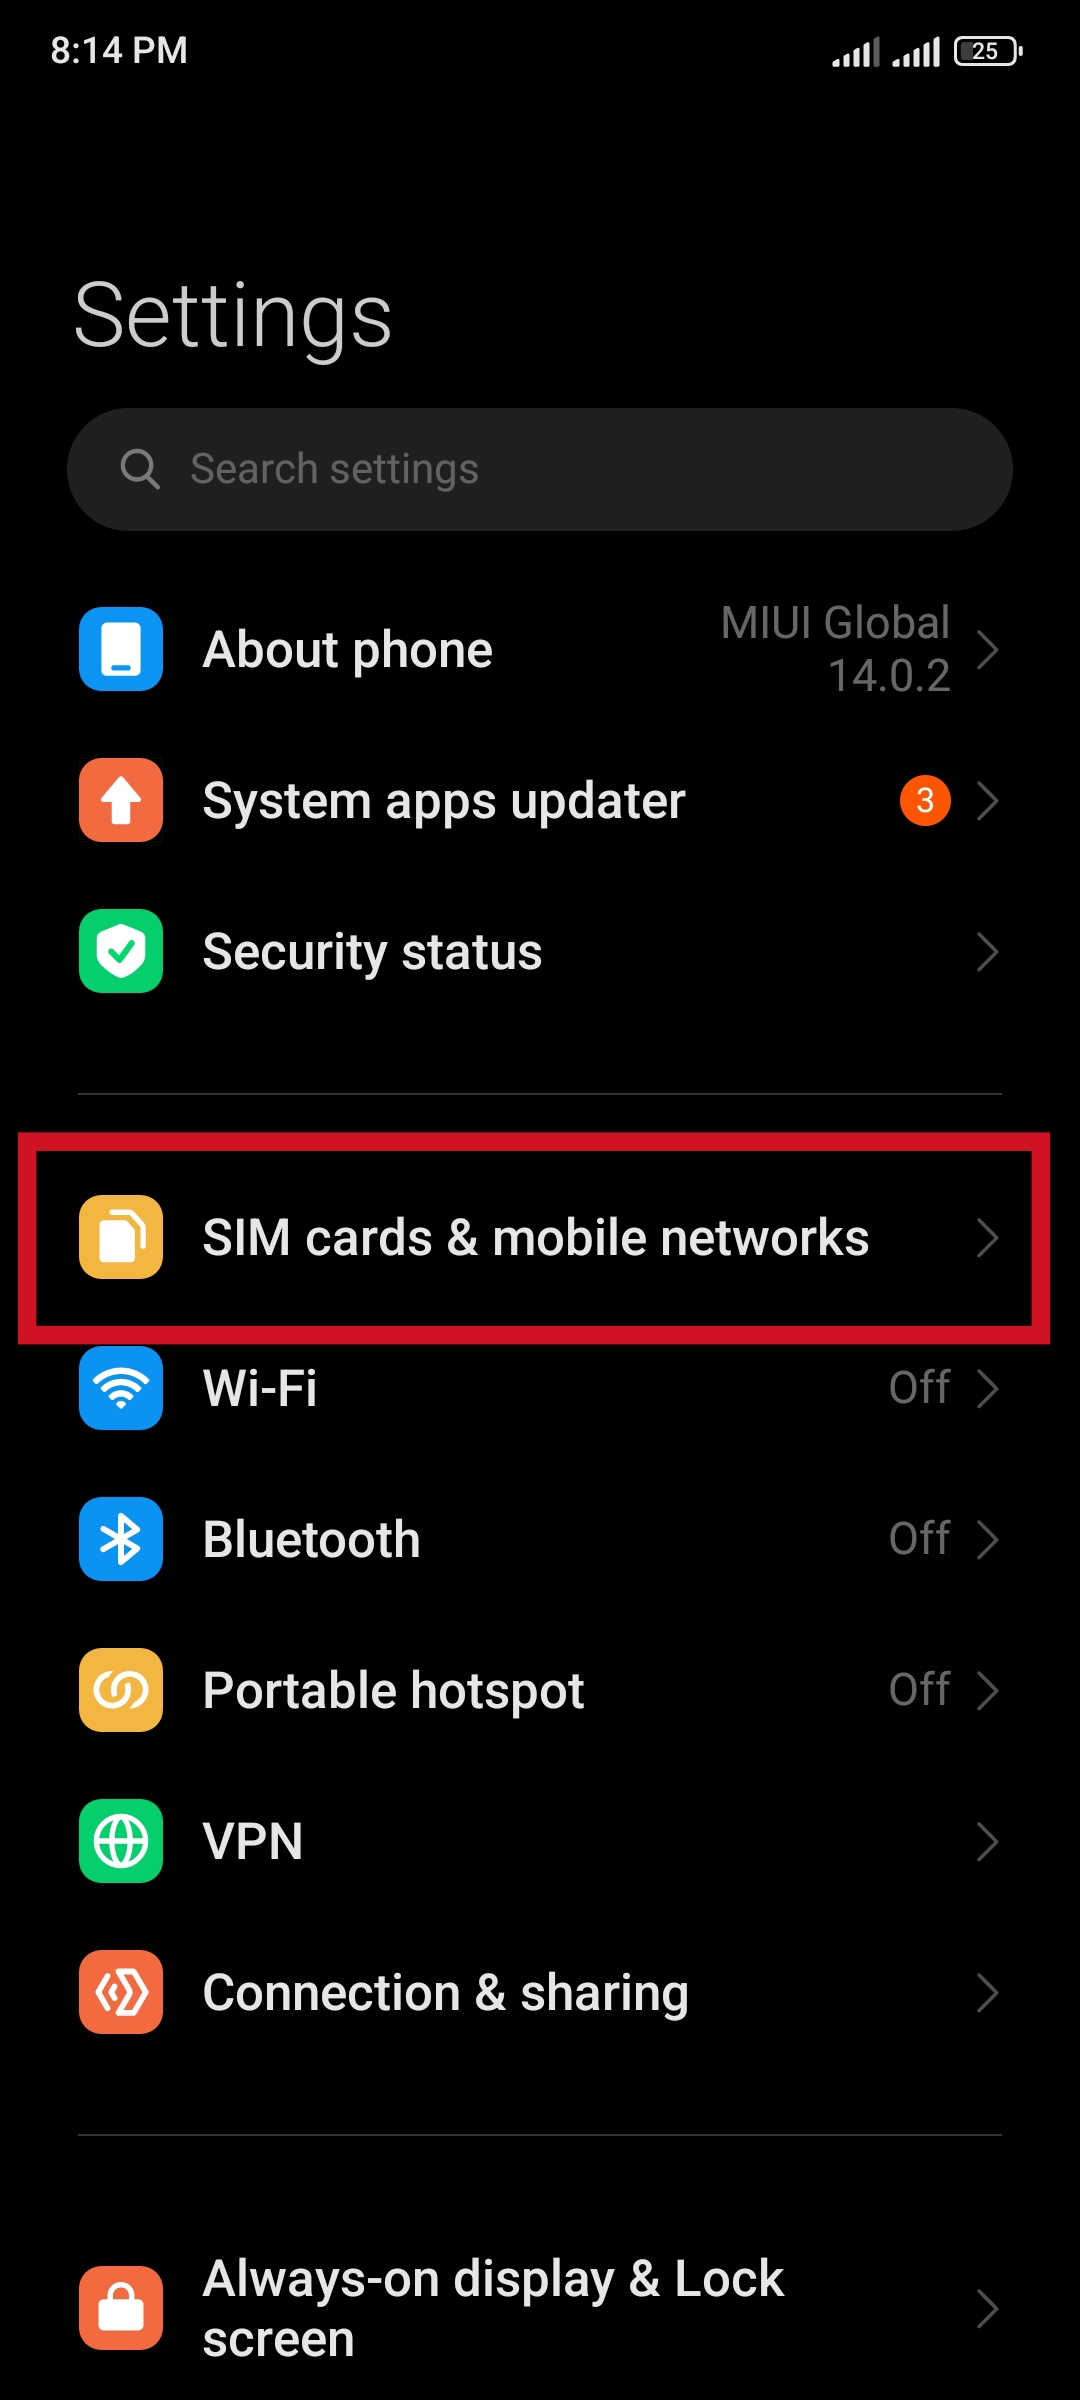 به بخش SIM cards and mobile networks بروید.